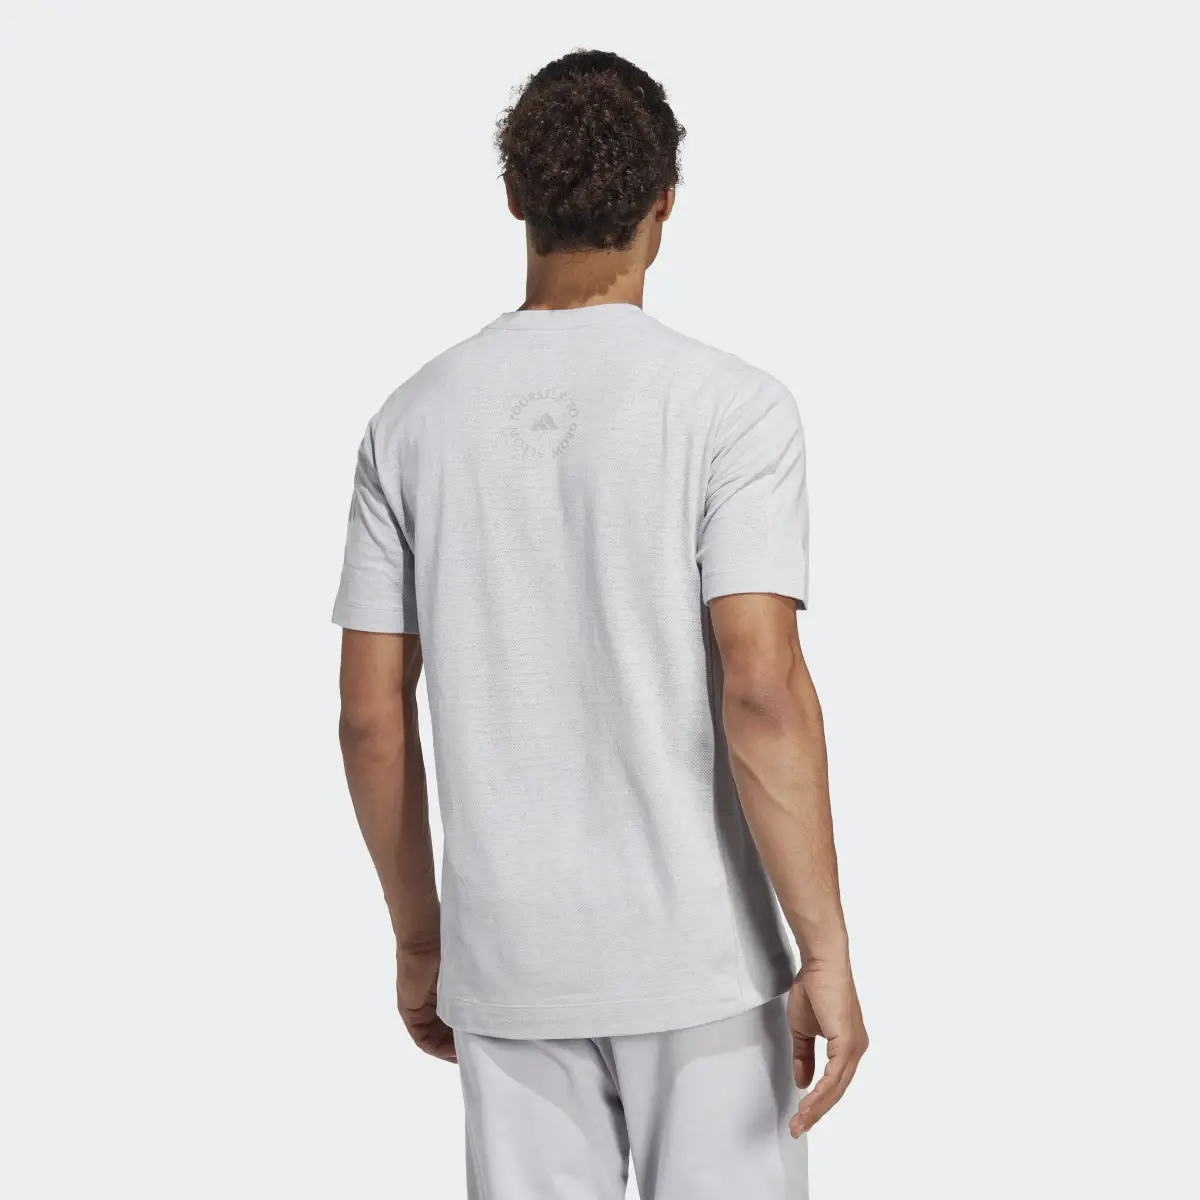 Adidas T-shirt da allenamento Yoga. 3